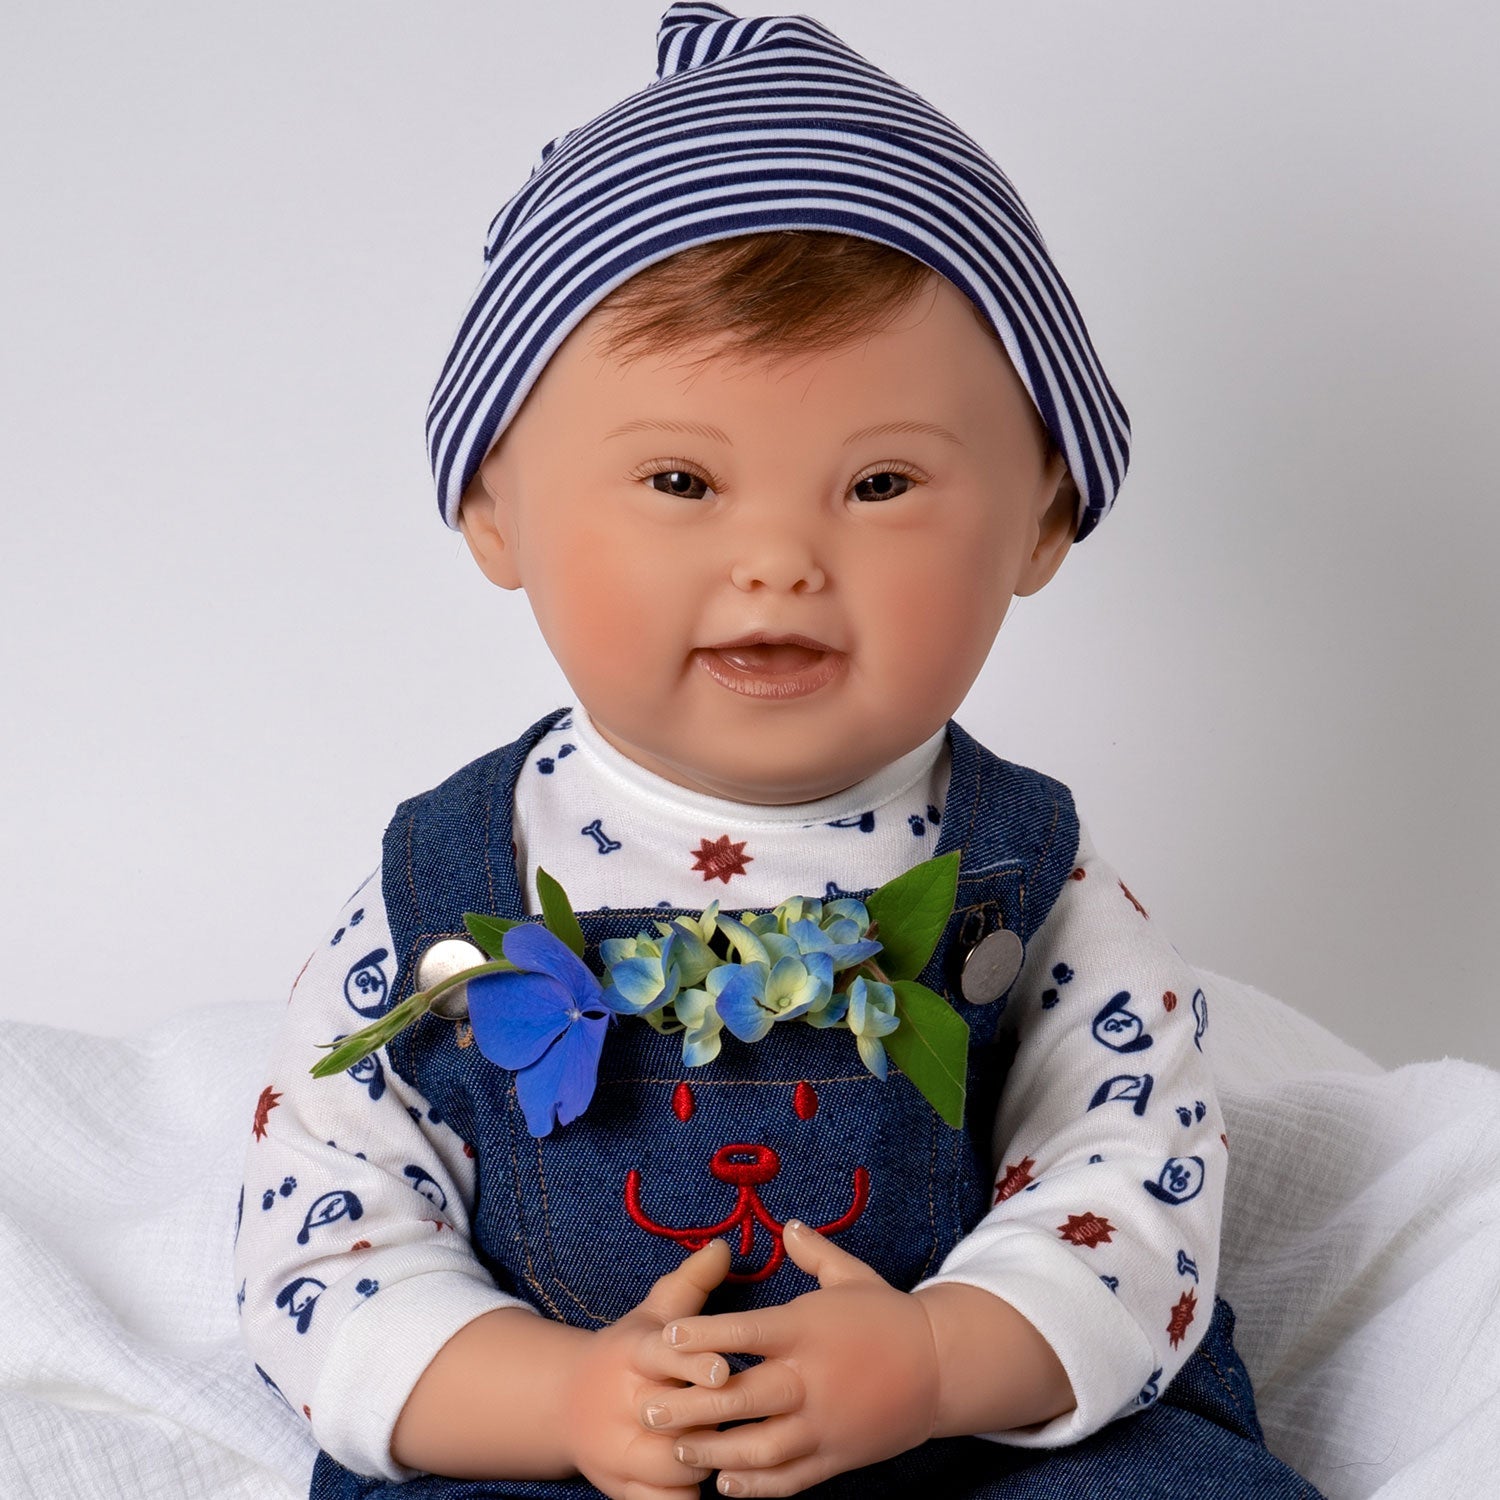 JOYMOR 22in Reborn Baby Dolls Mini Cute Silicone Realistic Baby Doll l –  Joymor